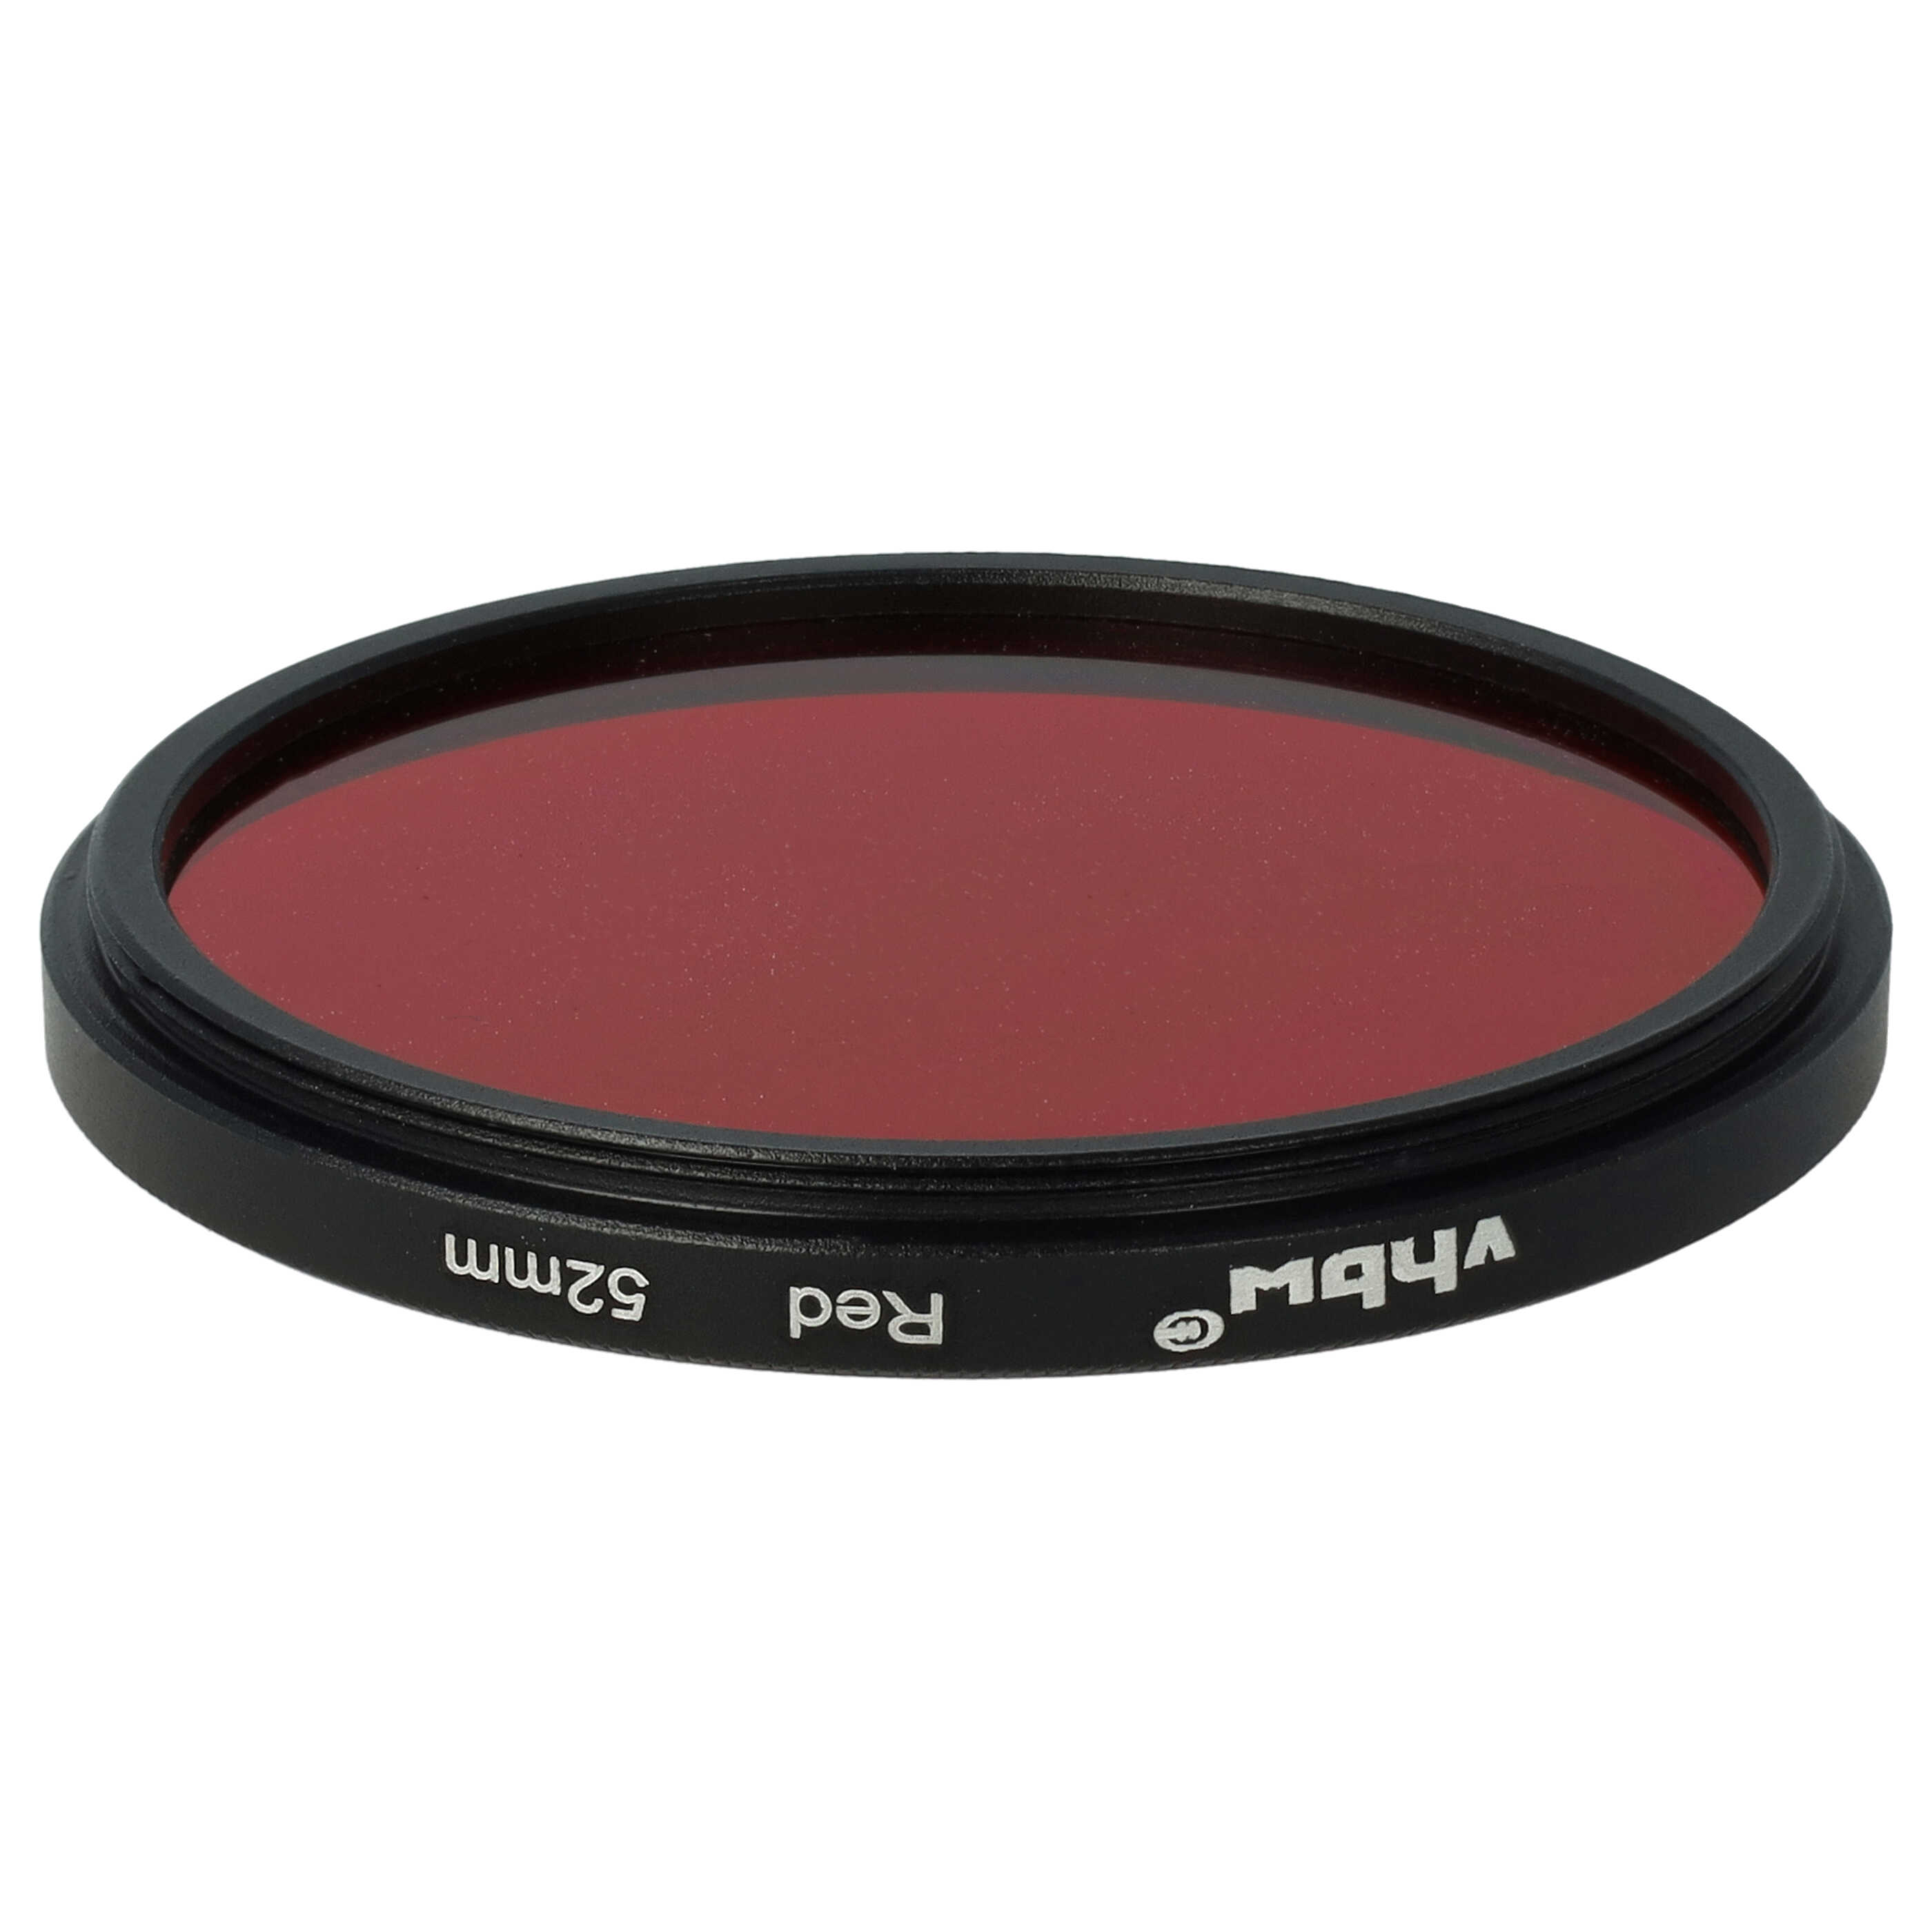 Filtro de color para objetivo de cámara con rosca de filtro de 52 mm - Filtro rojo